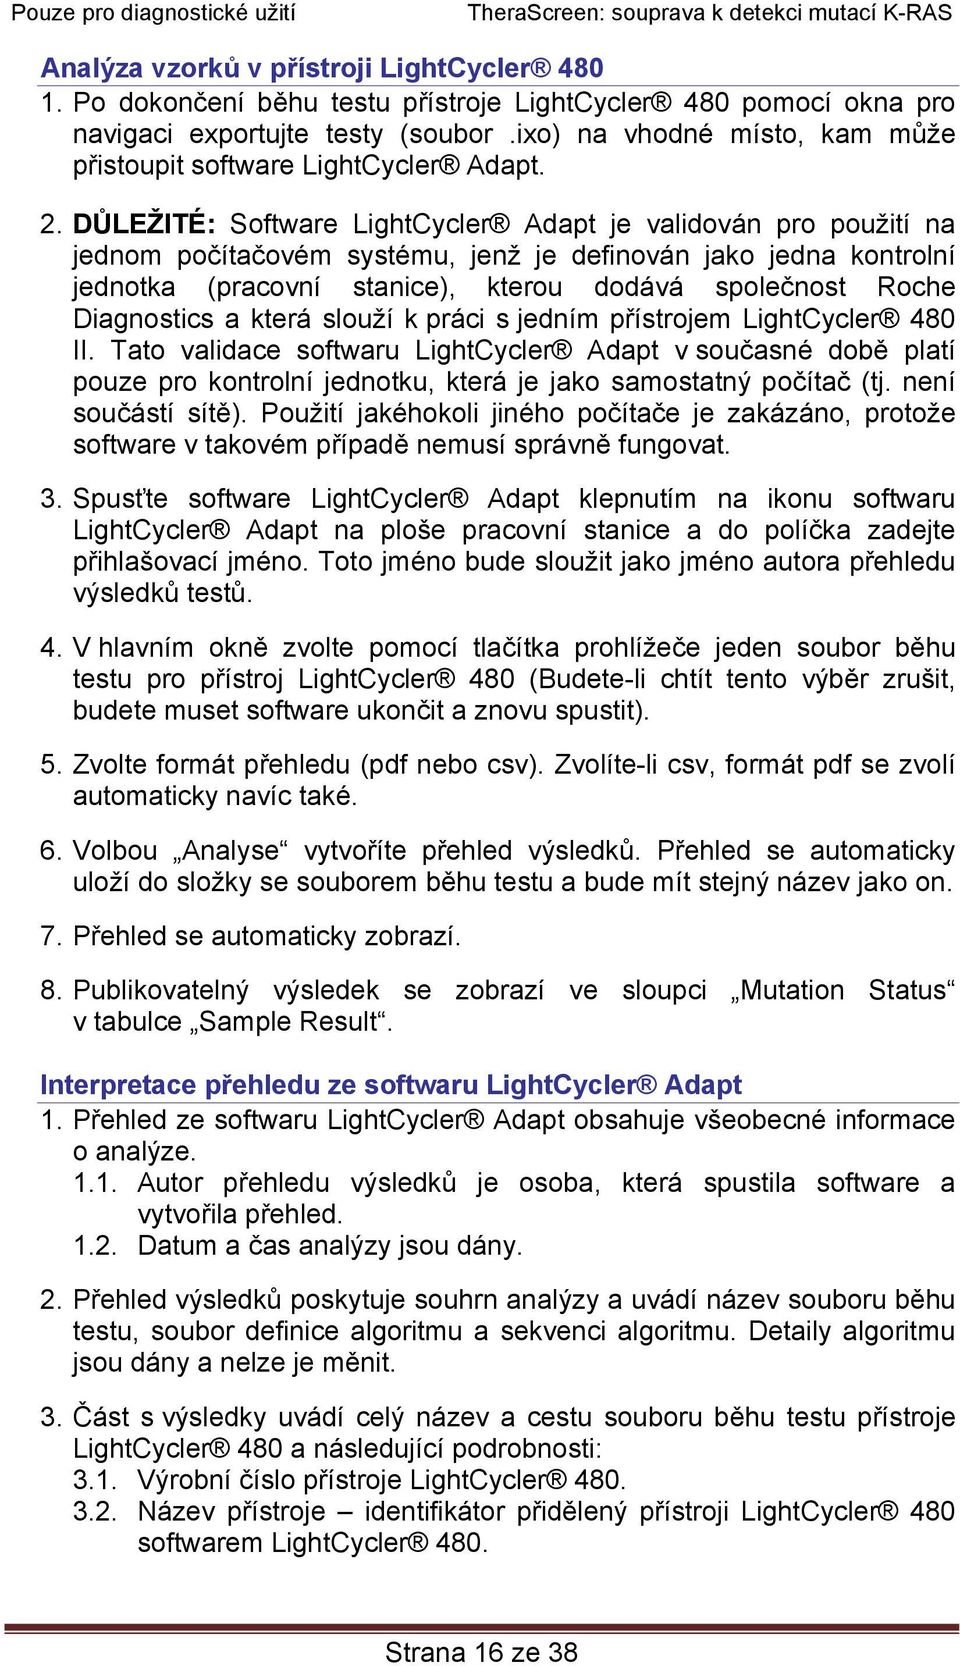 DŮLEŽITÉ: Software LightCycler Adapt je validován pro použití na jednom počítačovém systému, jenž je definován jako jedna kontrolní jednotka (pracovní stanice), kterou dodává společnost Roche